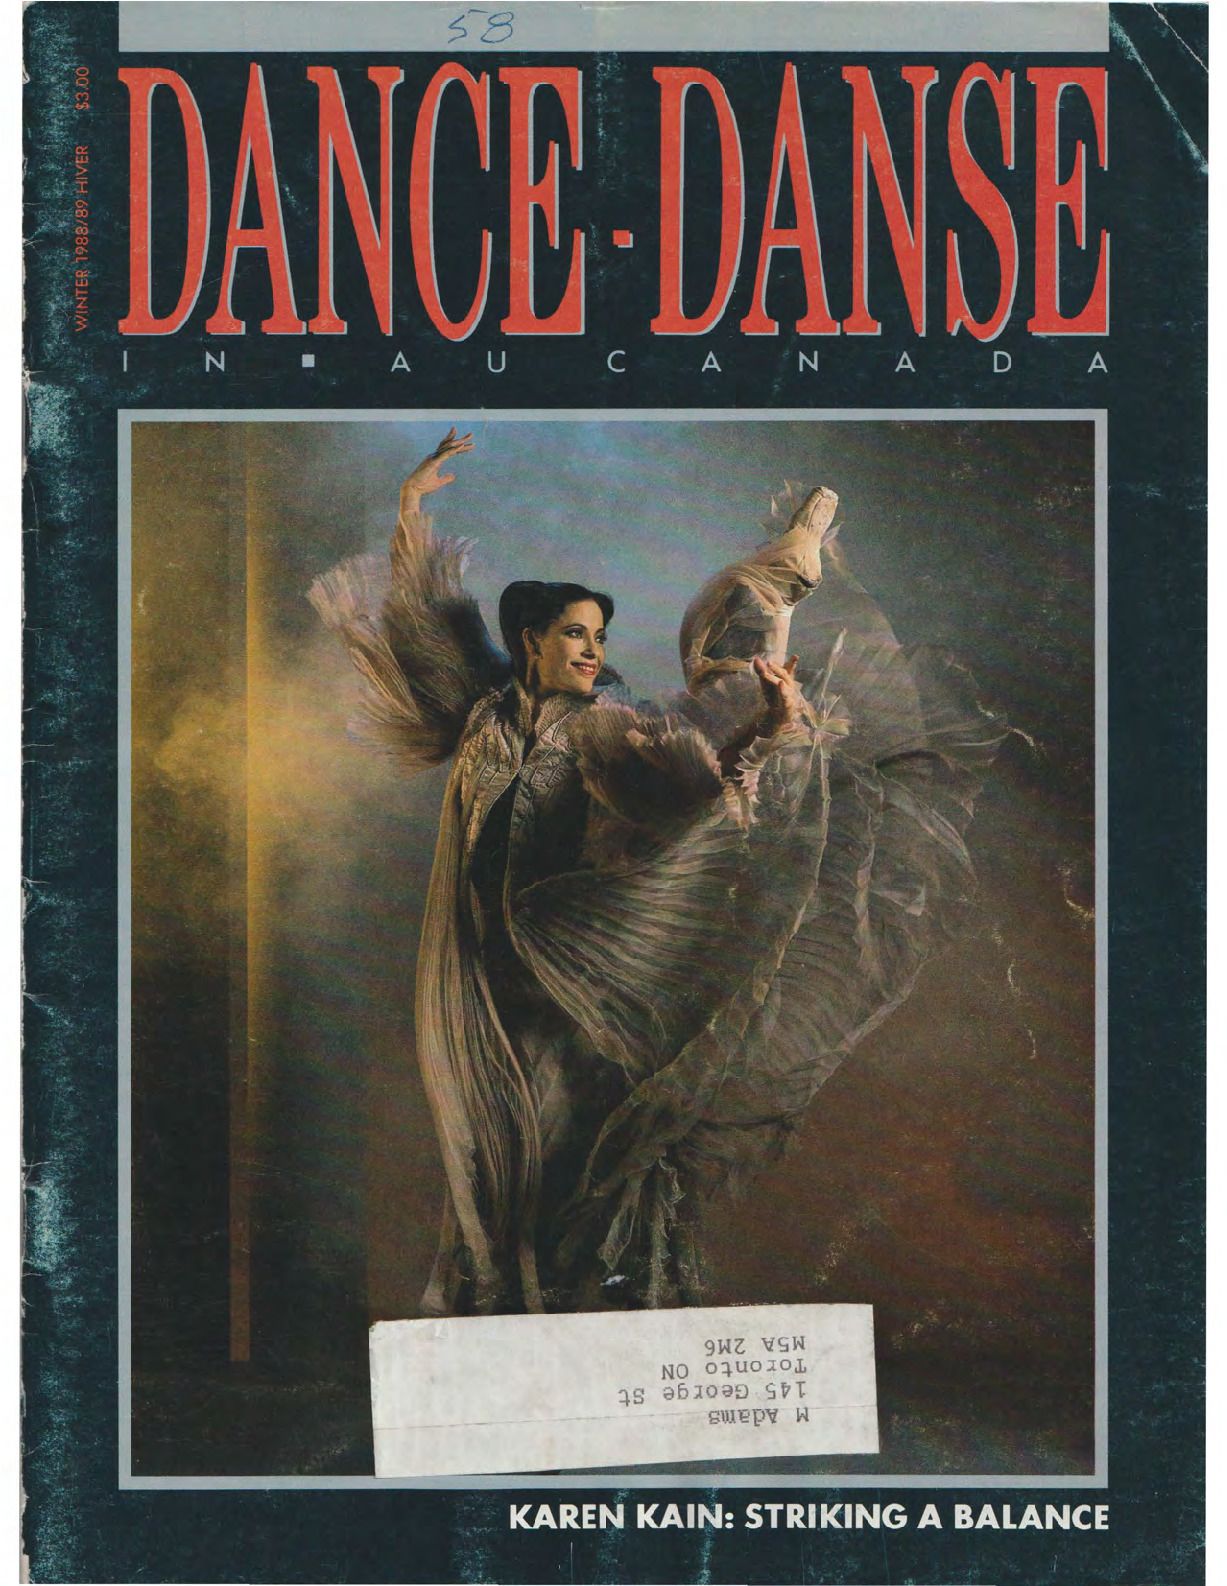 Dance in Canada Magazine No 58 Winter 1988-89 compressed.pdf